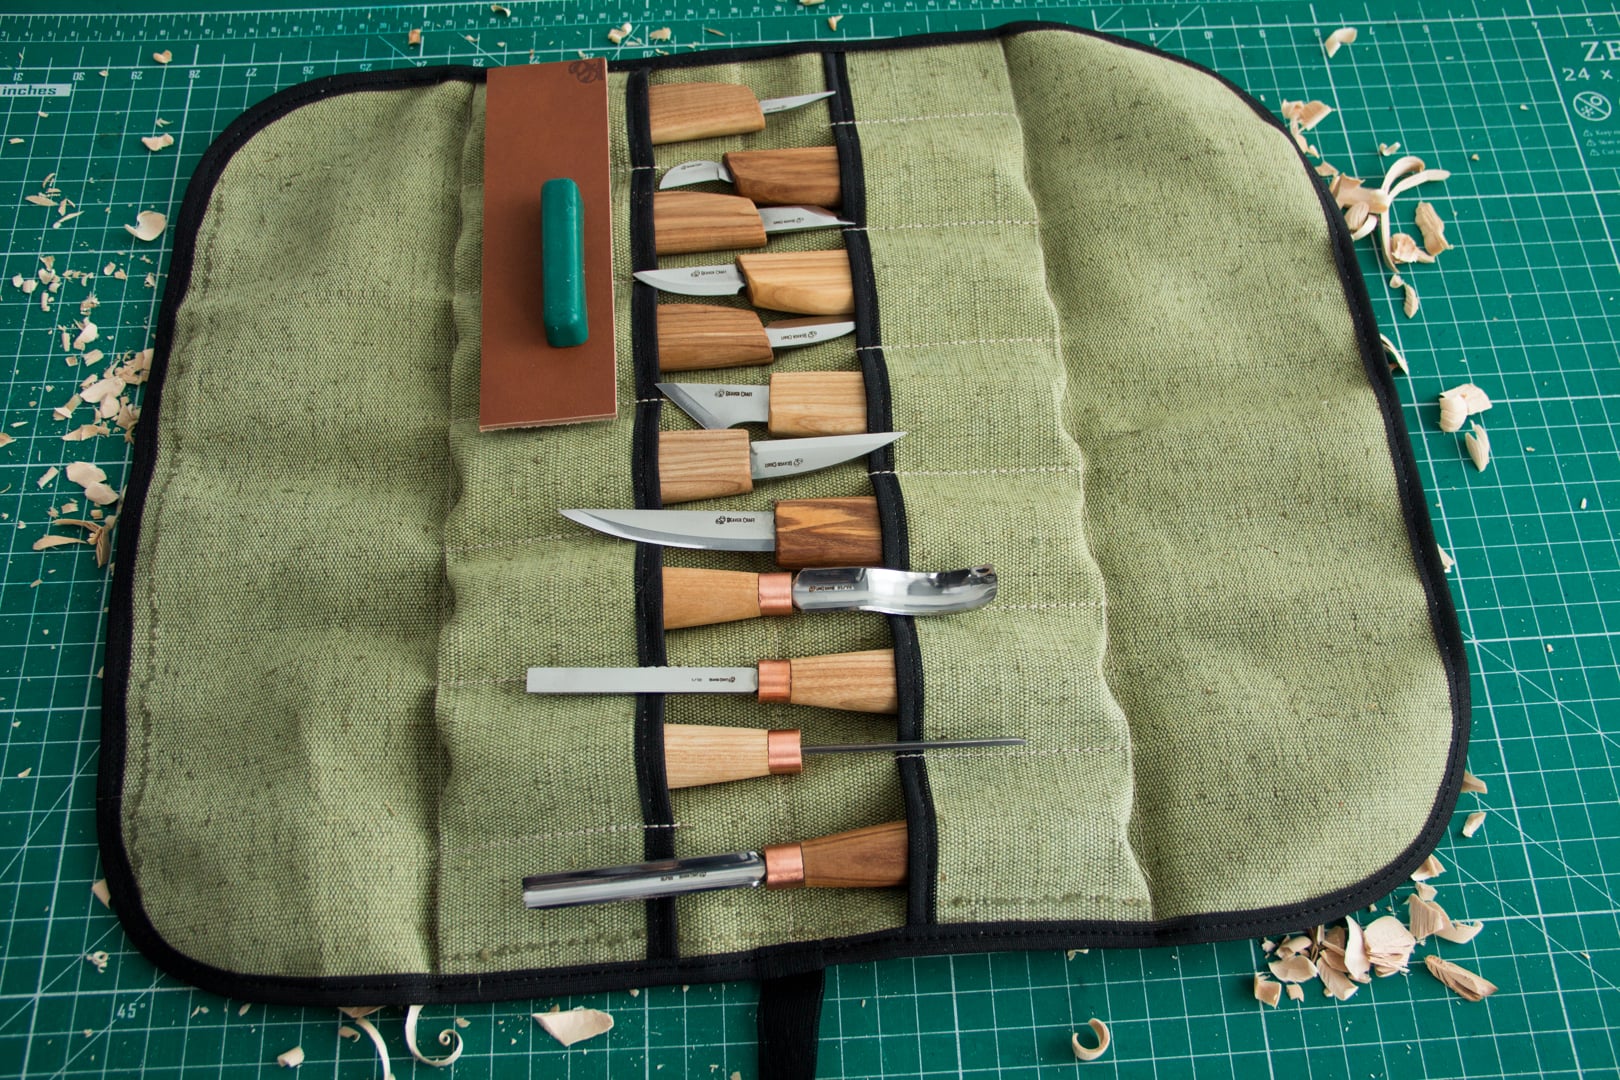 BeaverCraft S10L - Left handed Wood Carving Set of 12 Knives